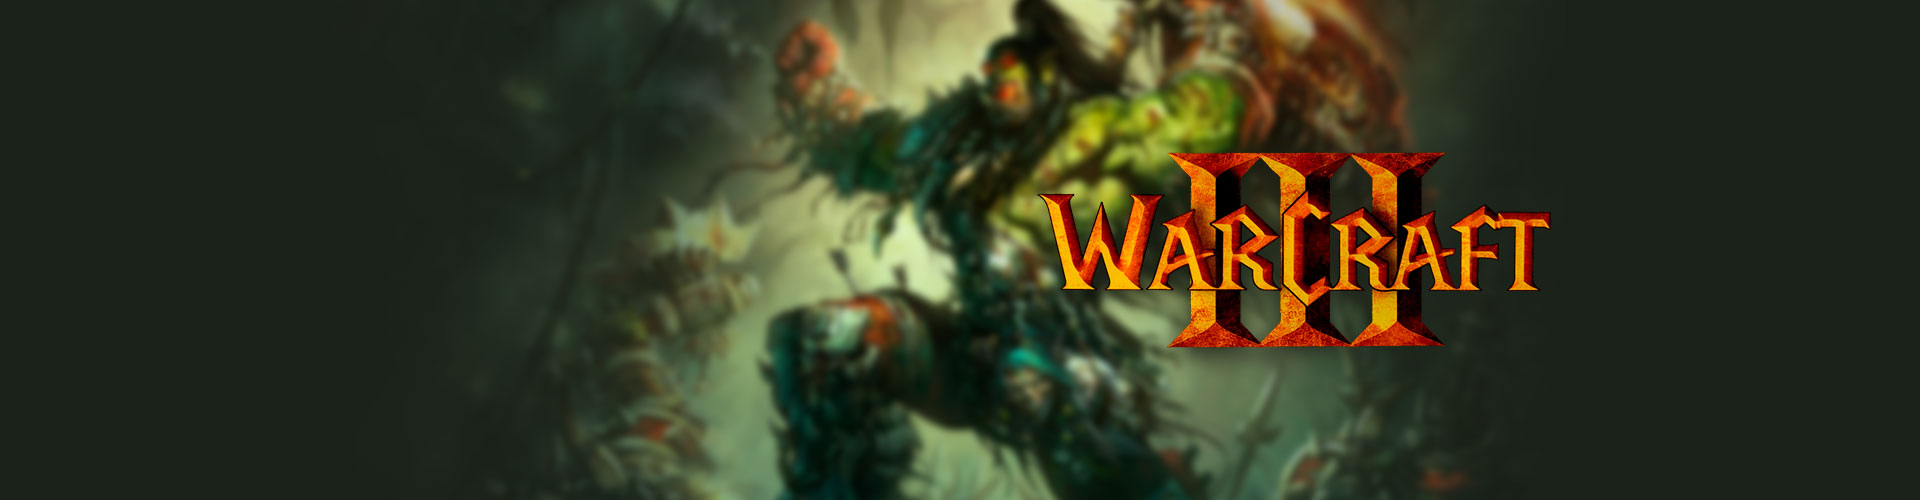 Configuration PC minimale, recommandée et 4K pour jouer à Warcraft 3 : Reforged